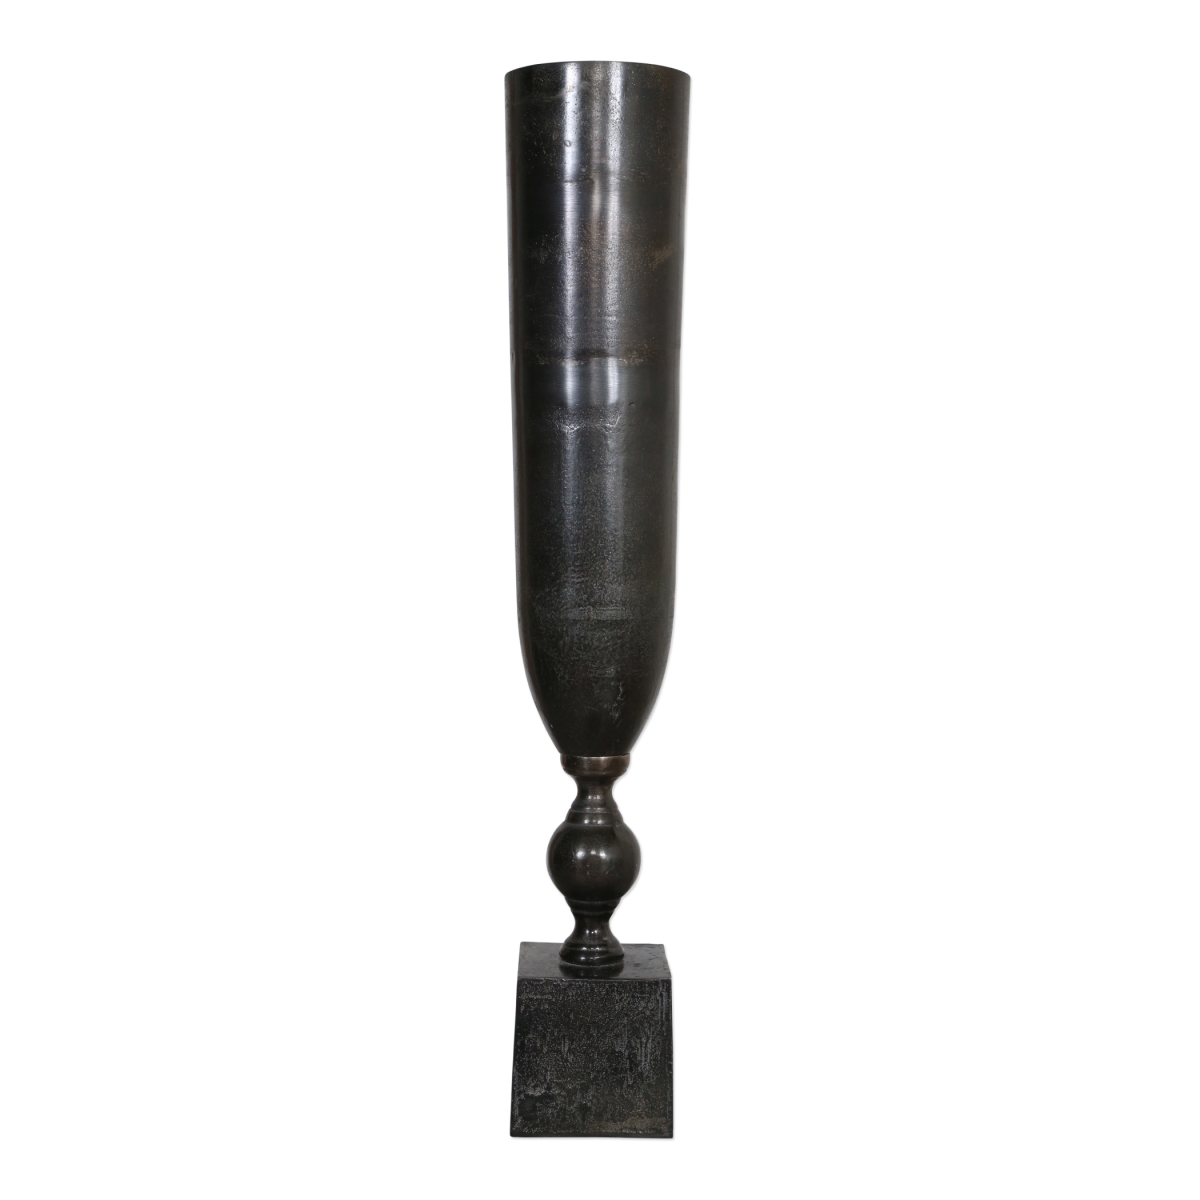 Picture of 212 Main 18959 Kaylie Black Nickel Vase